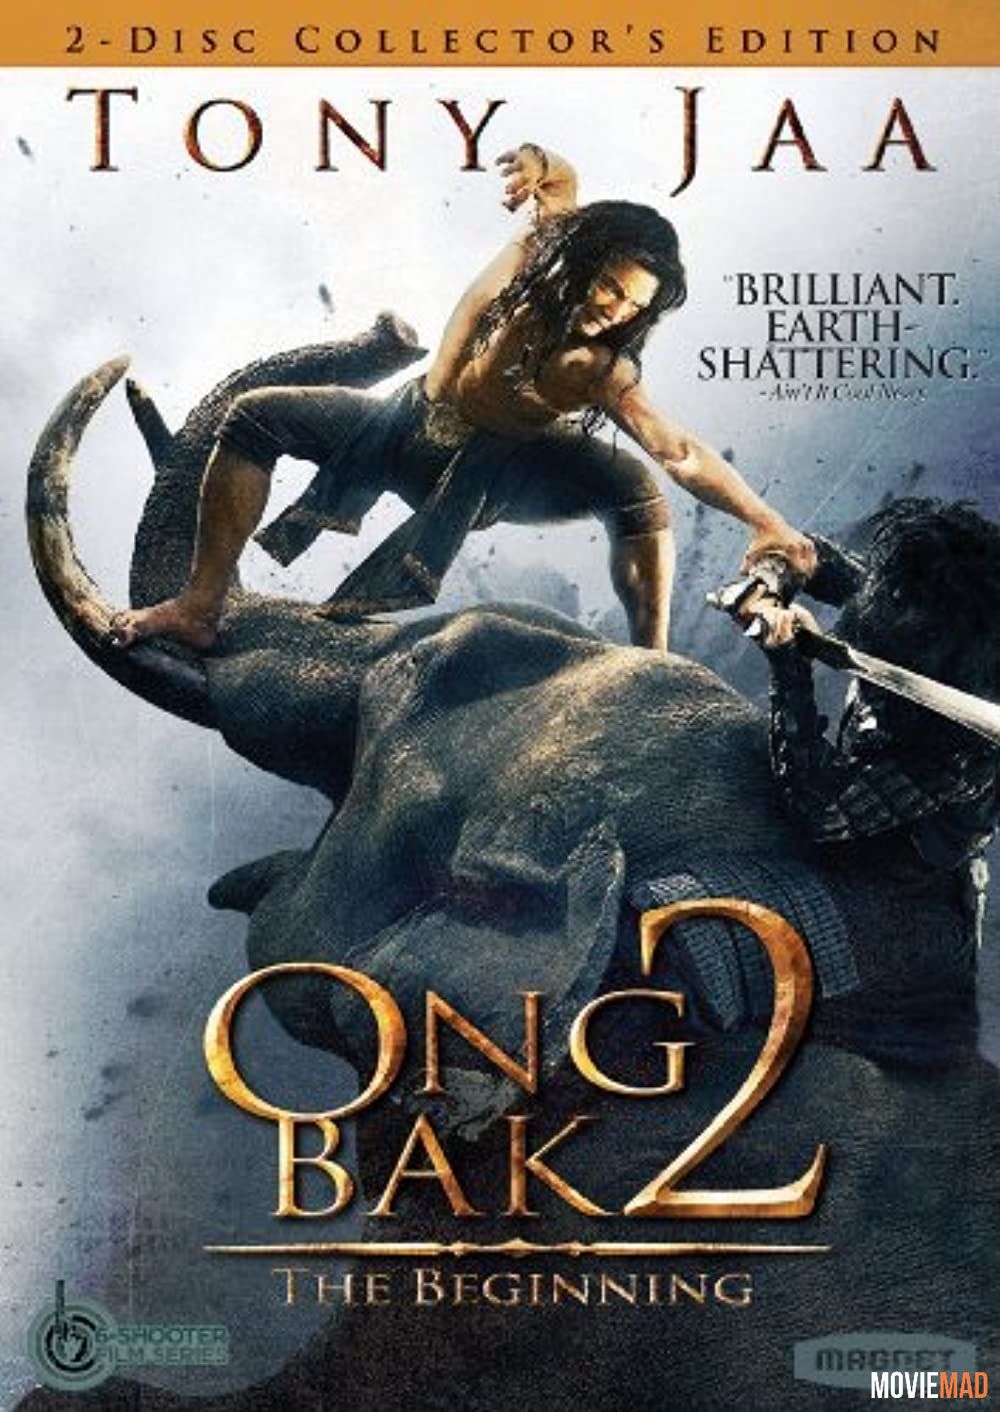 full moviesOng Bak 2 The Beginning 2008 Hindi Dubbed BluRay Full Movie 720p 480p